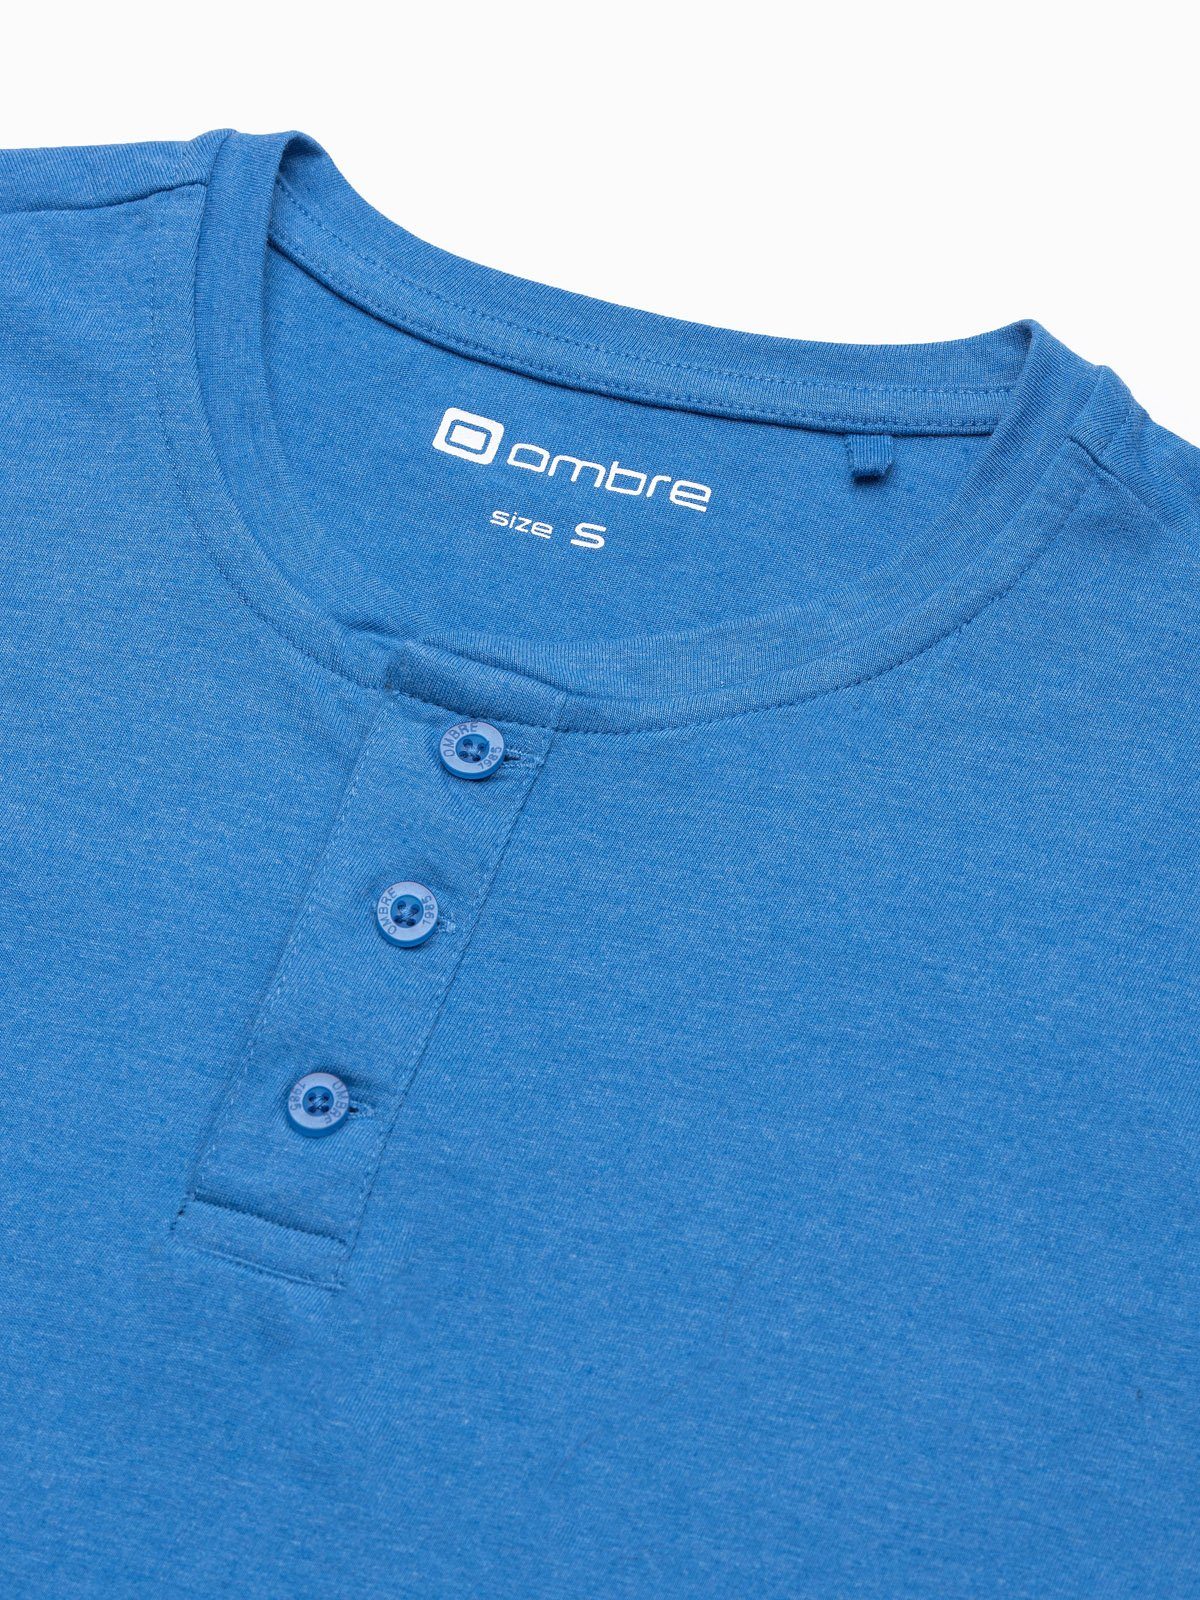 S1390 meliert blau Herren-T-Shirt S T-Shirt - OMBRE Unifarbenes